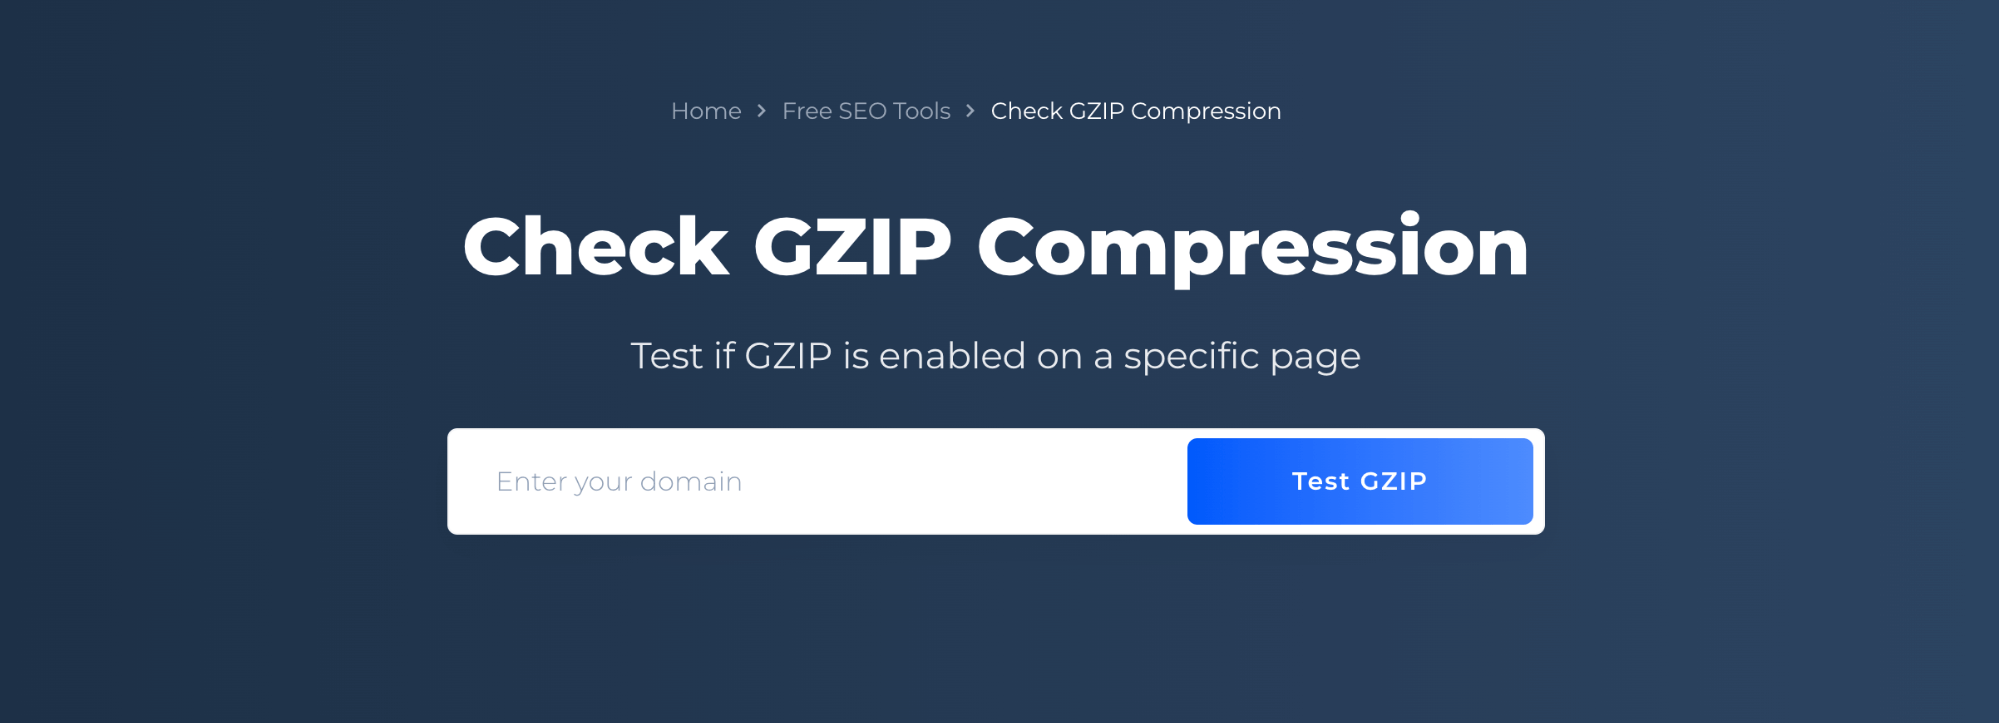 Verificar compactação GZIP